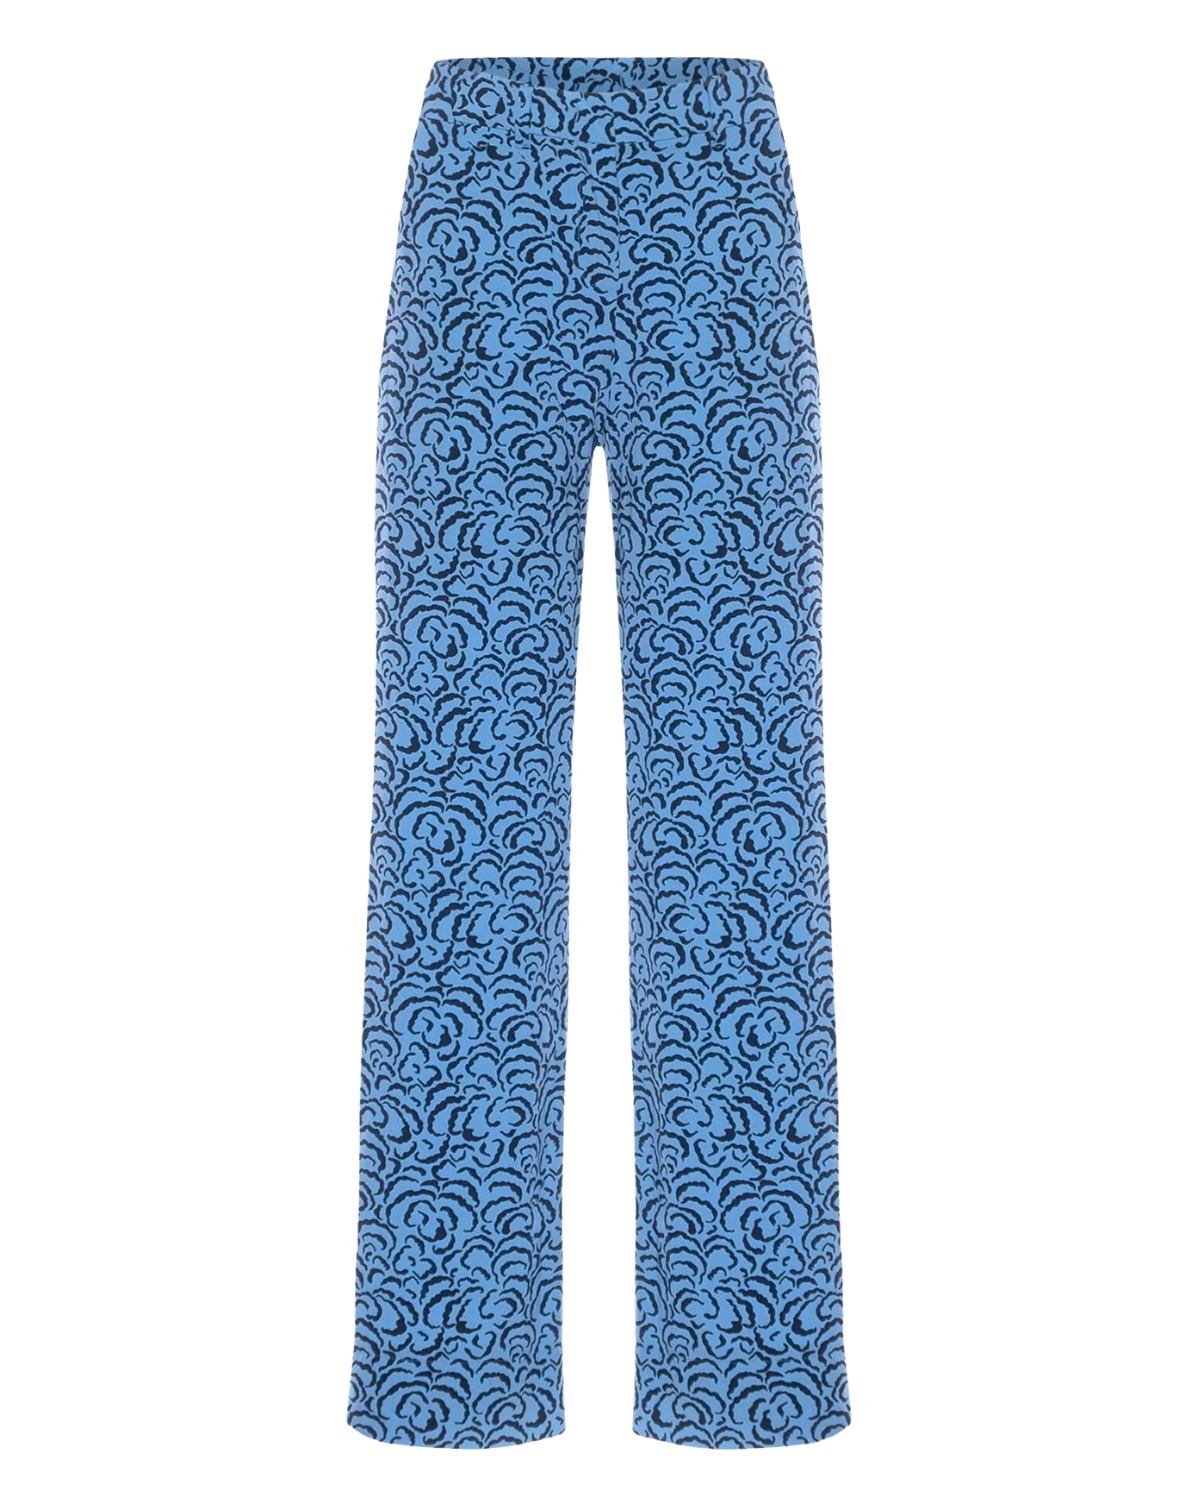 Carpazi Long Trouser (Deep Blue Cloud)